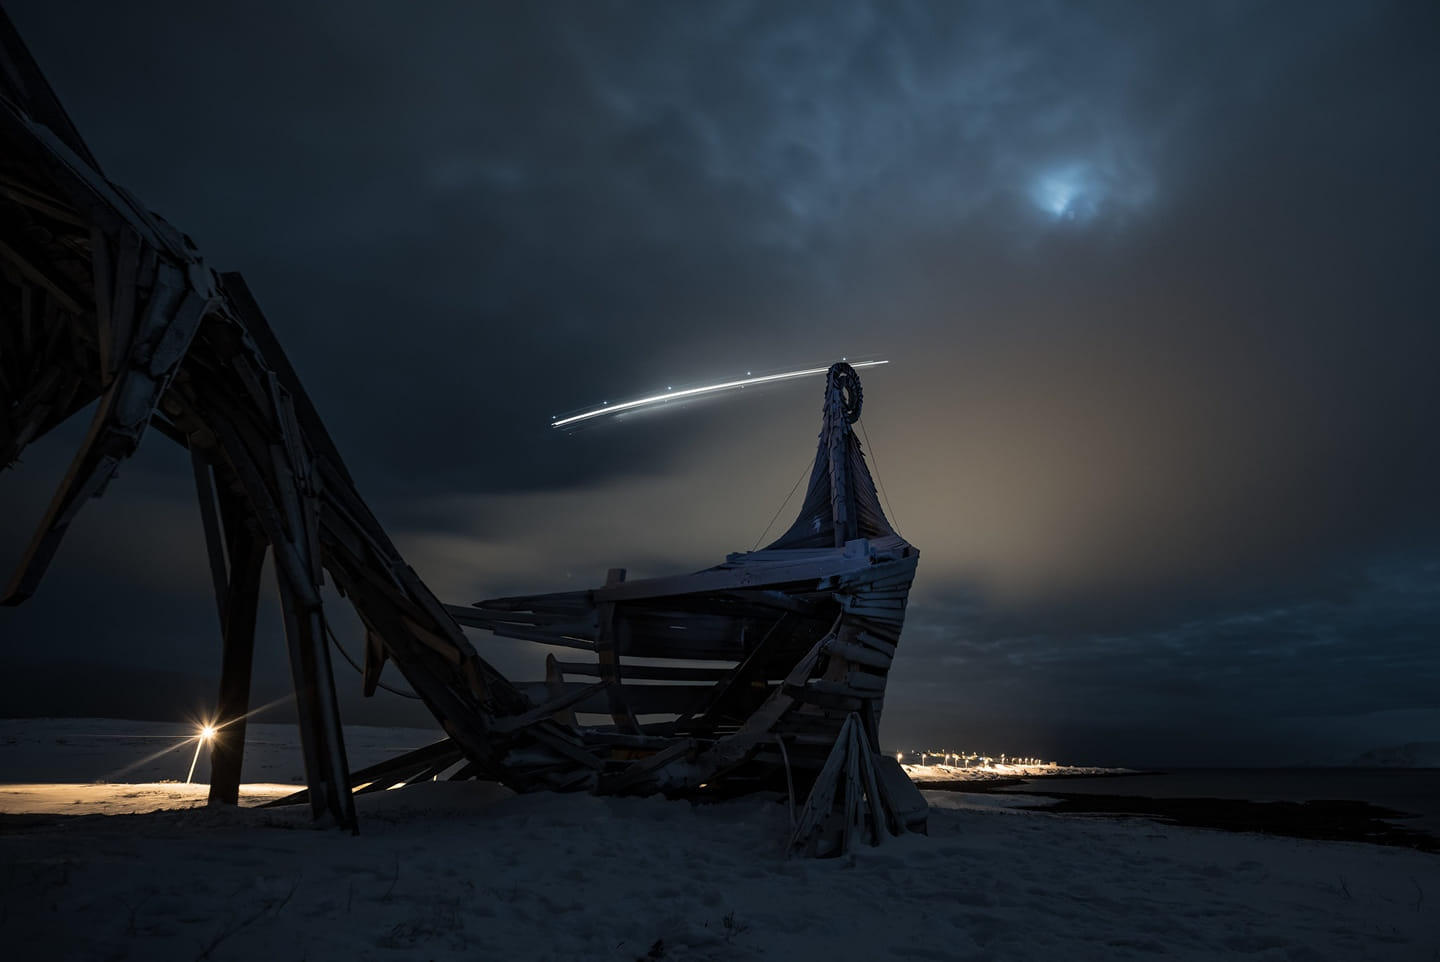 Арт-объект «Драккар-Левиафан». Вардё, Норвегия